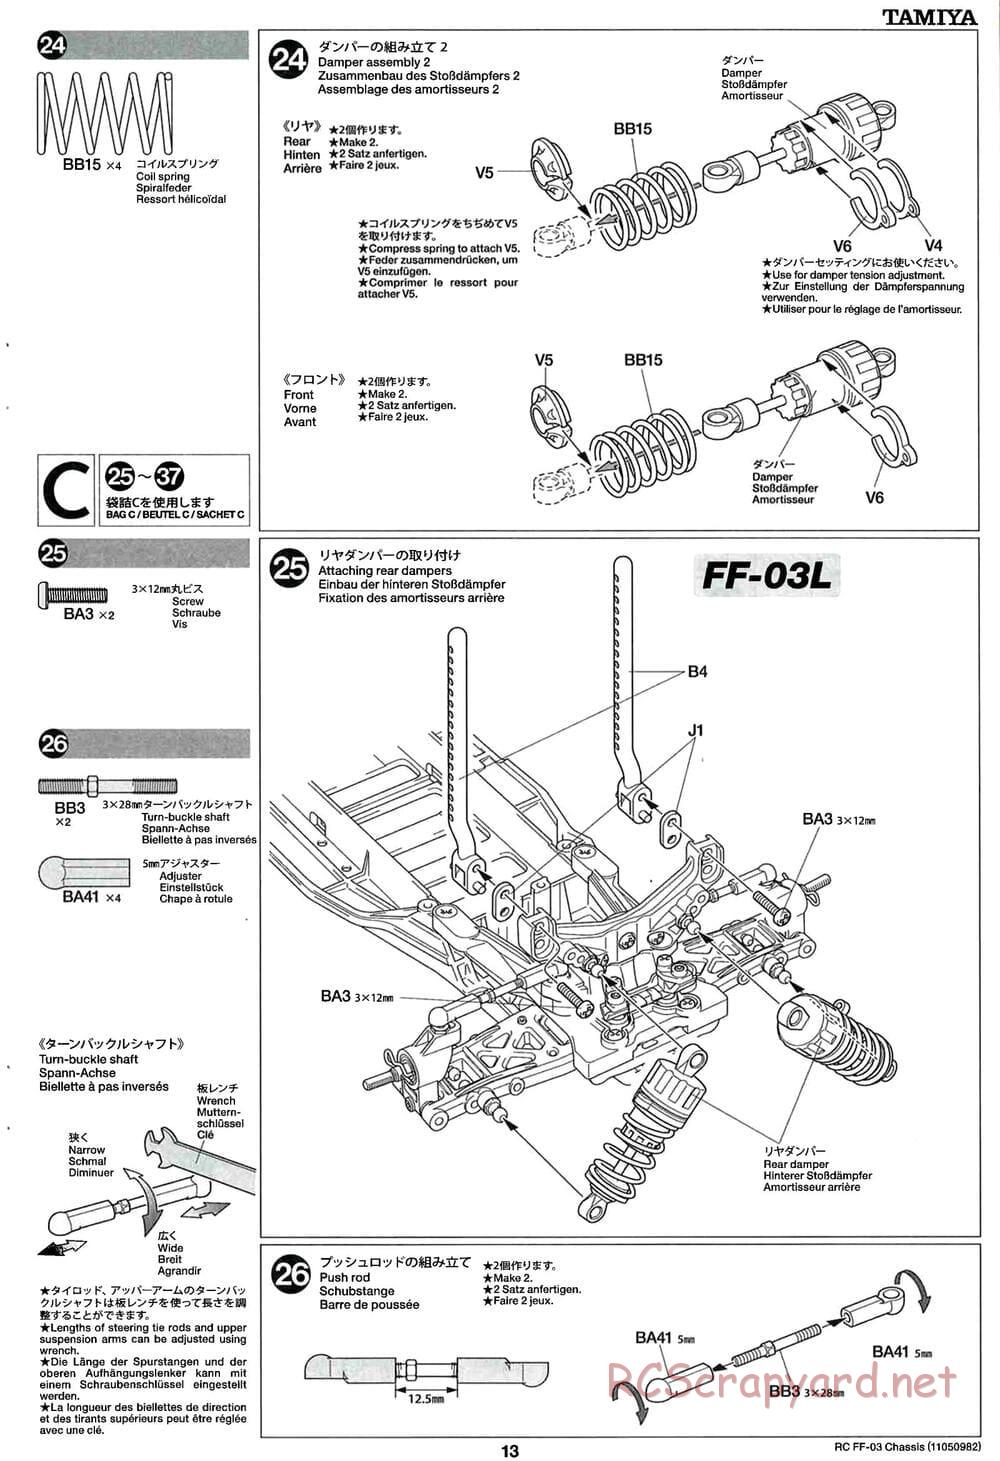 Tamiya - Honda CR-Z - FF-03 Chassis - Manual - Page 13